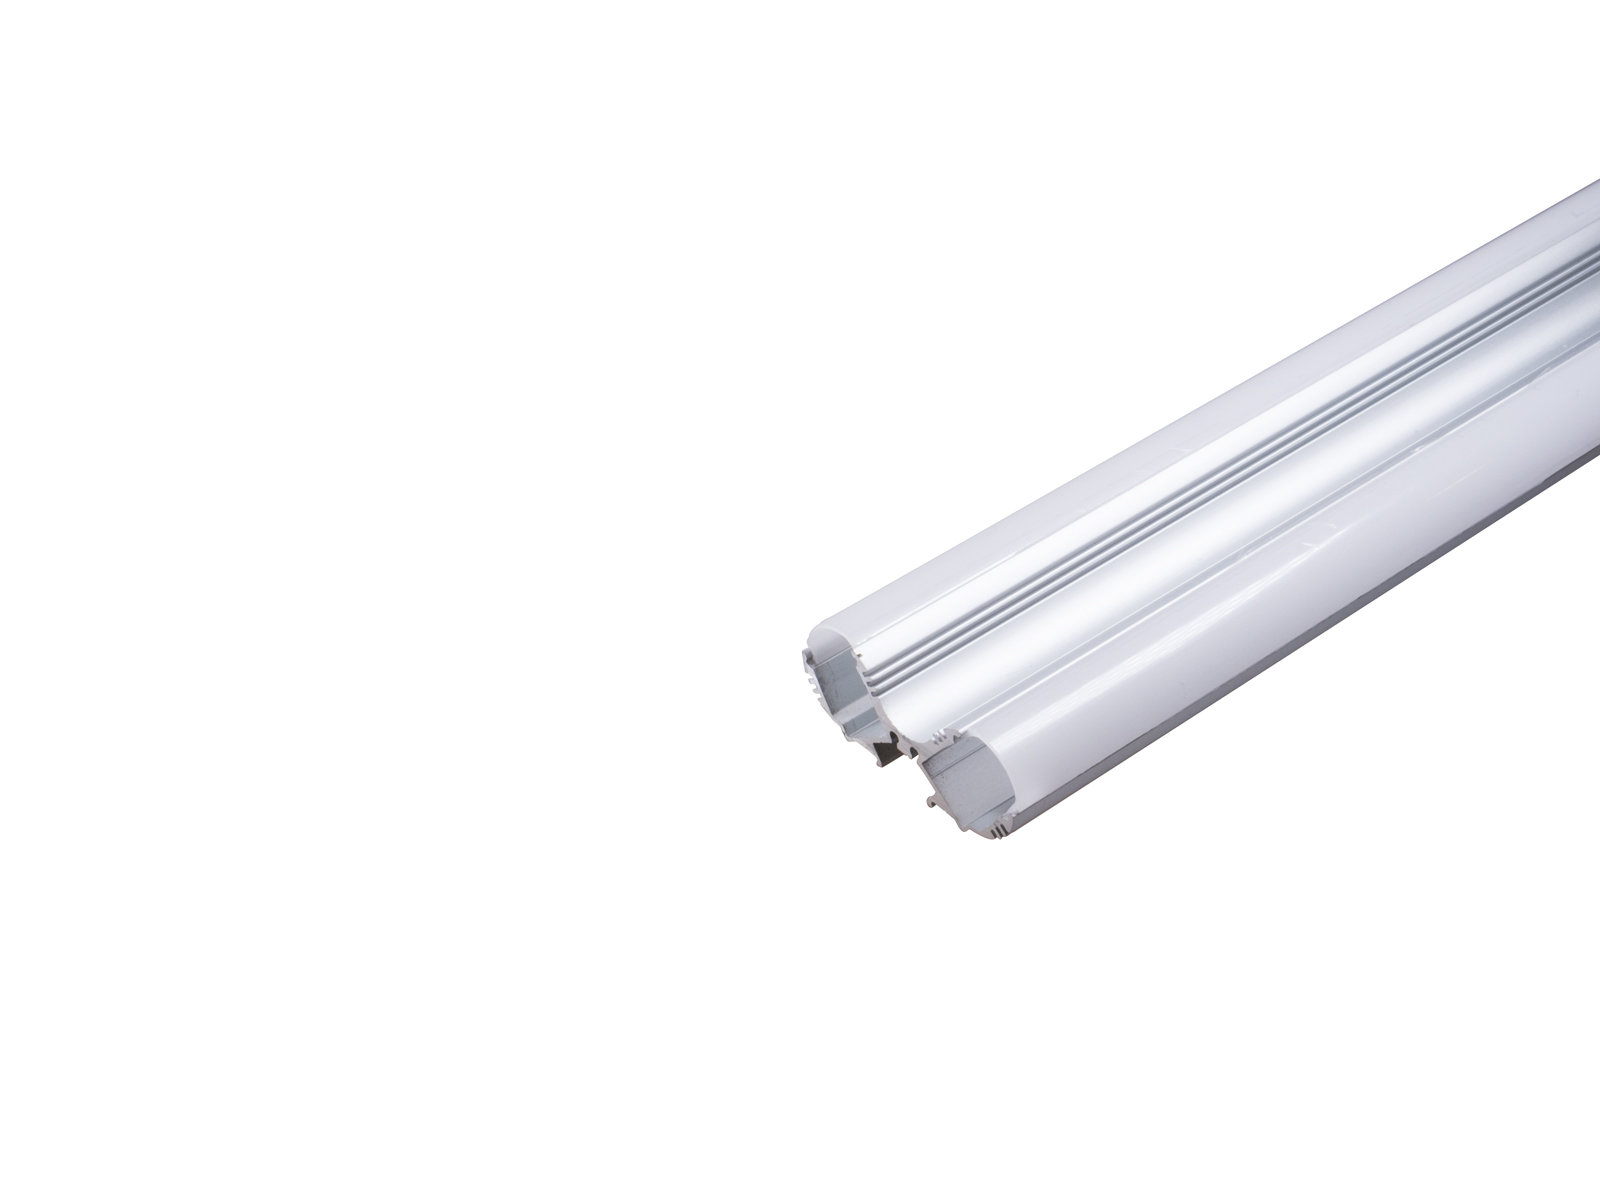 Alu Duoprofil für zwei LED Stripes silber mit Abdeckung opal 2m kaufen |  PUR-LED